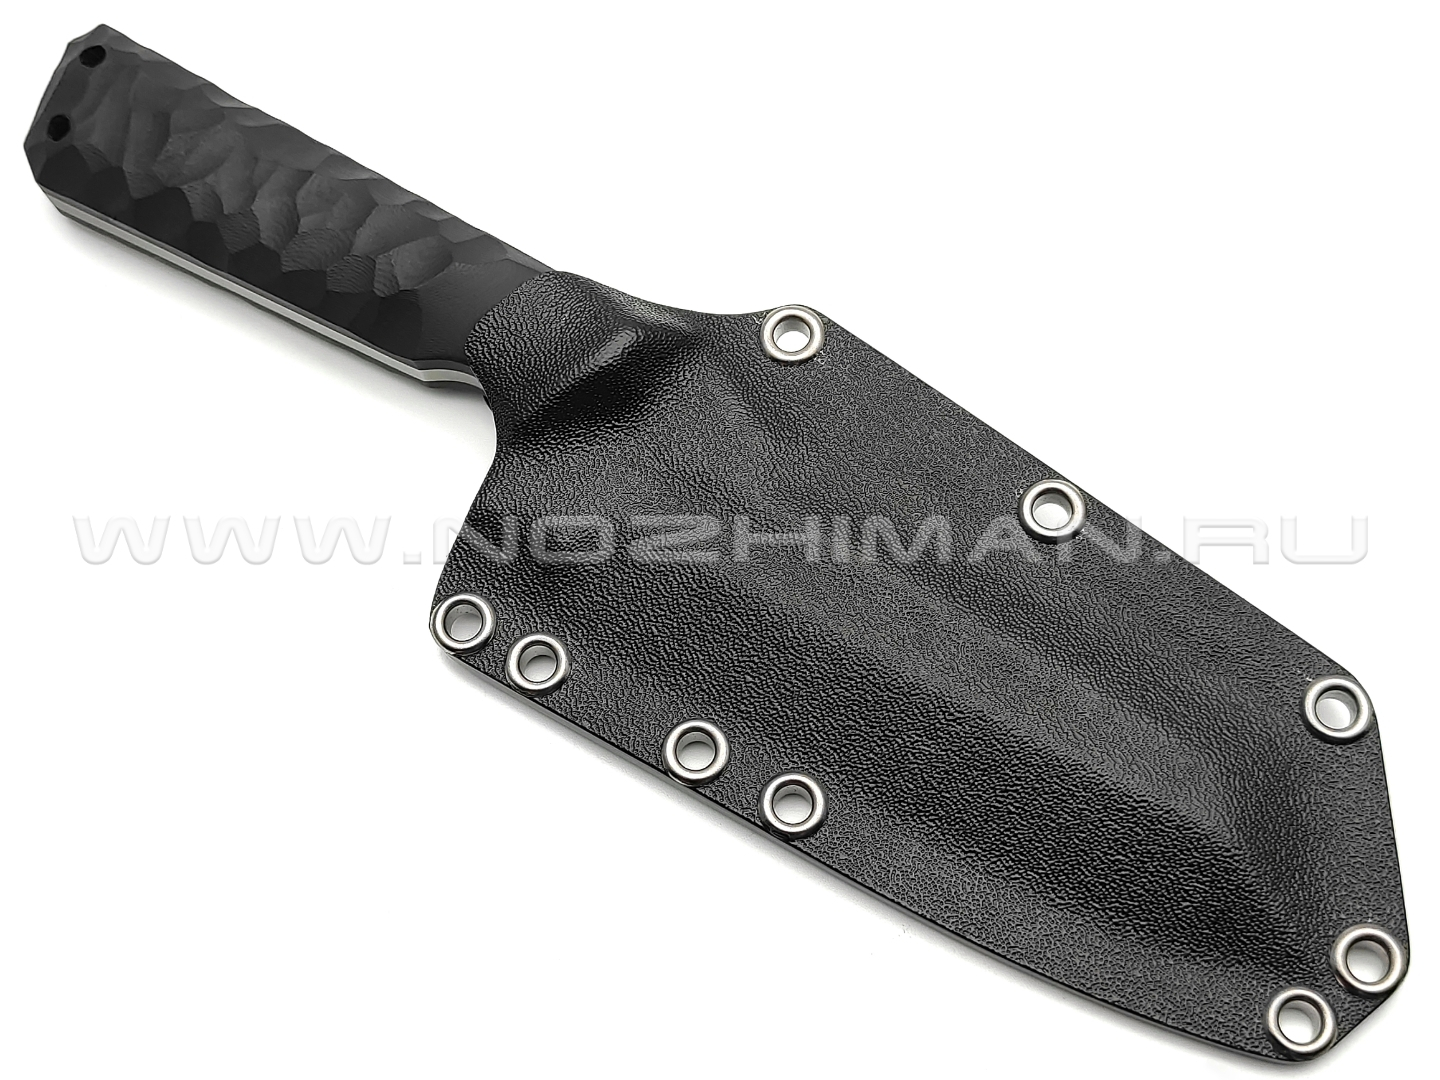 Волчий Век нож Карачун Custom сталь N690 WA bead-blast, рукоять G10 black